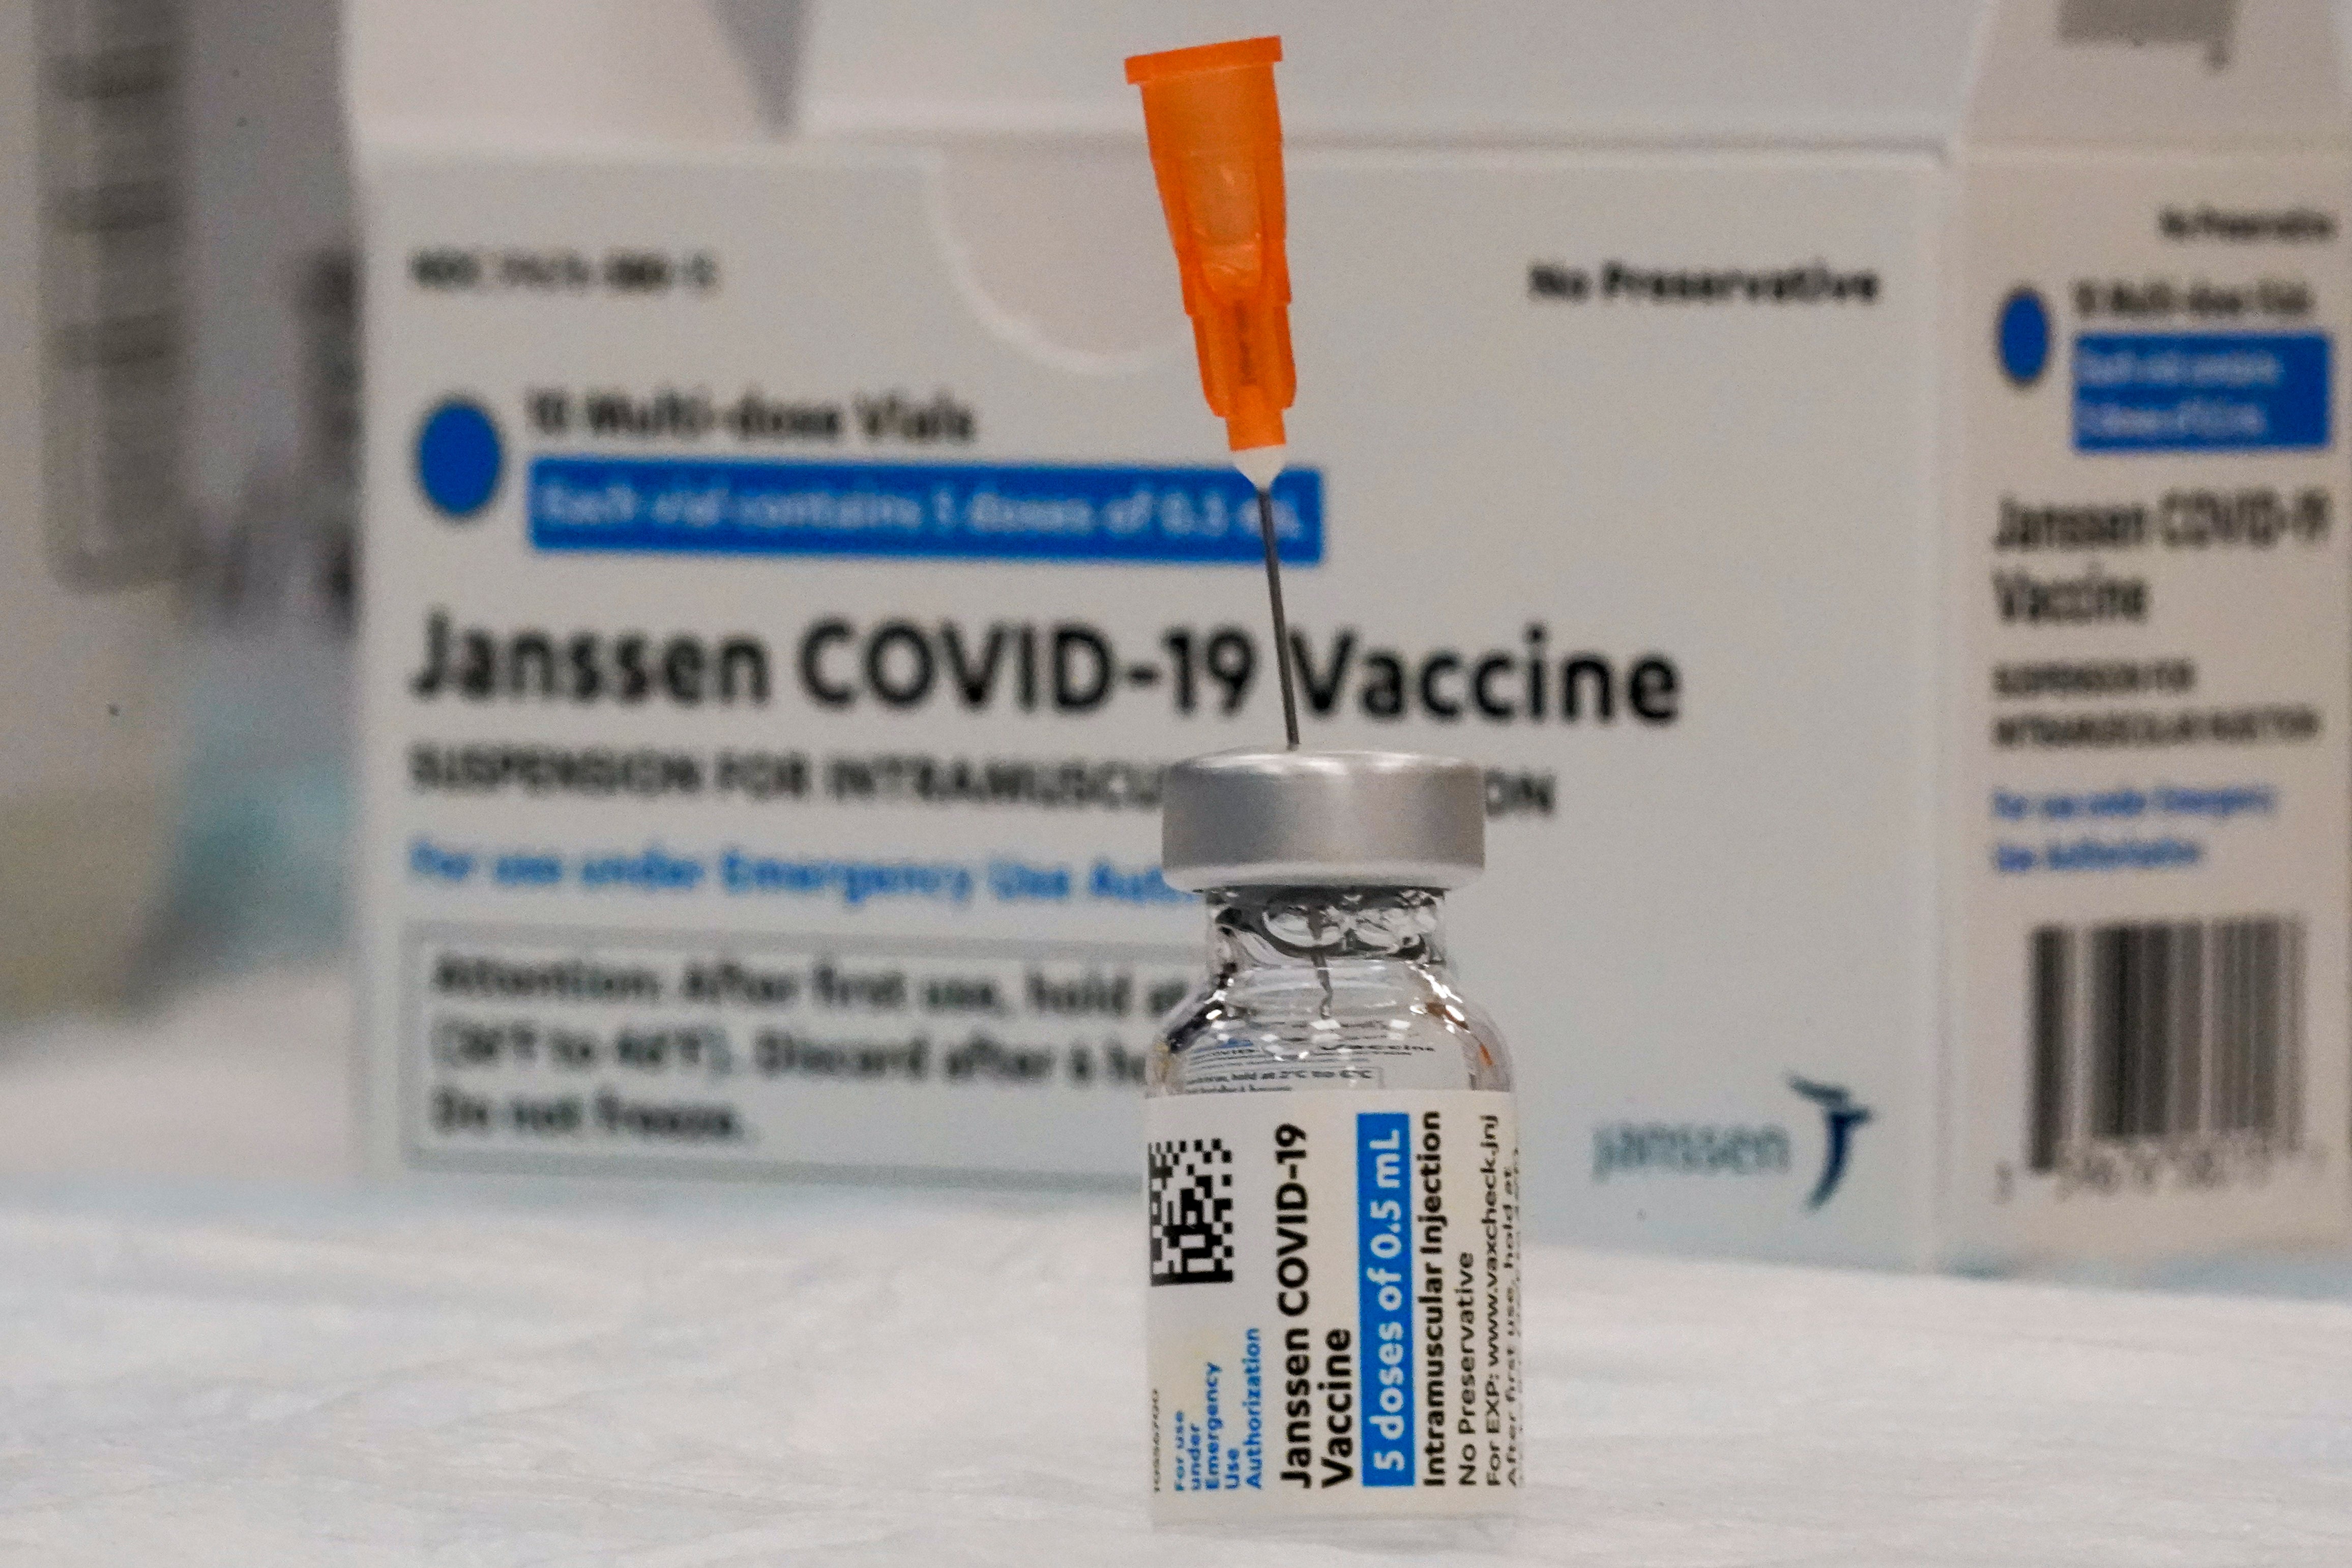 MED Virus Outbreak J&J Vaccine Factory